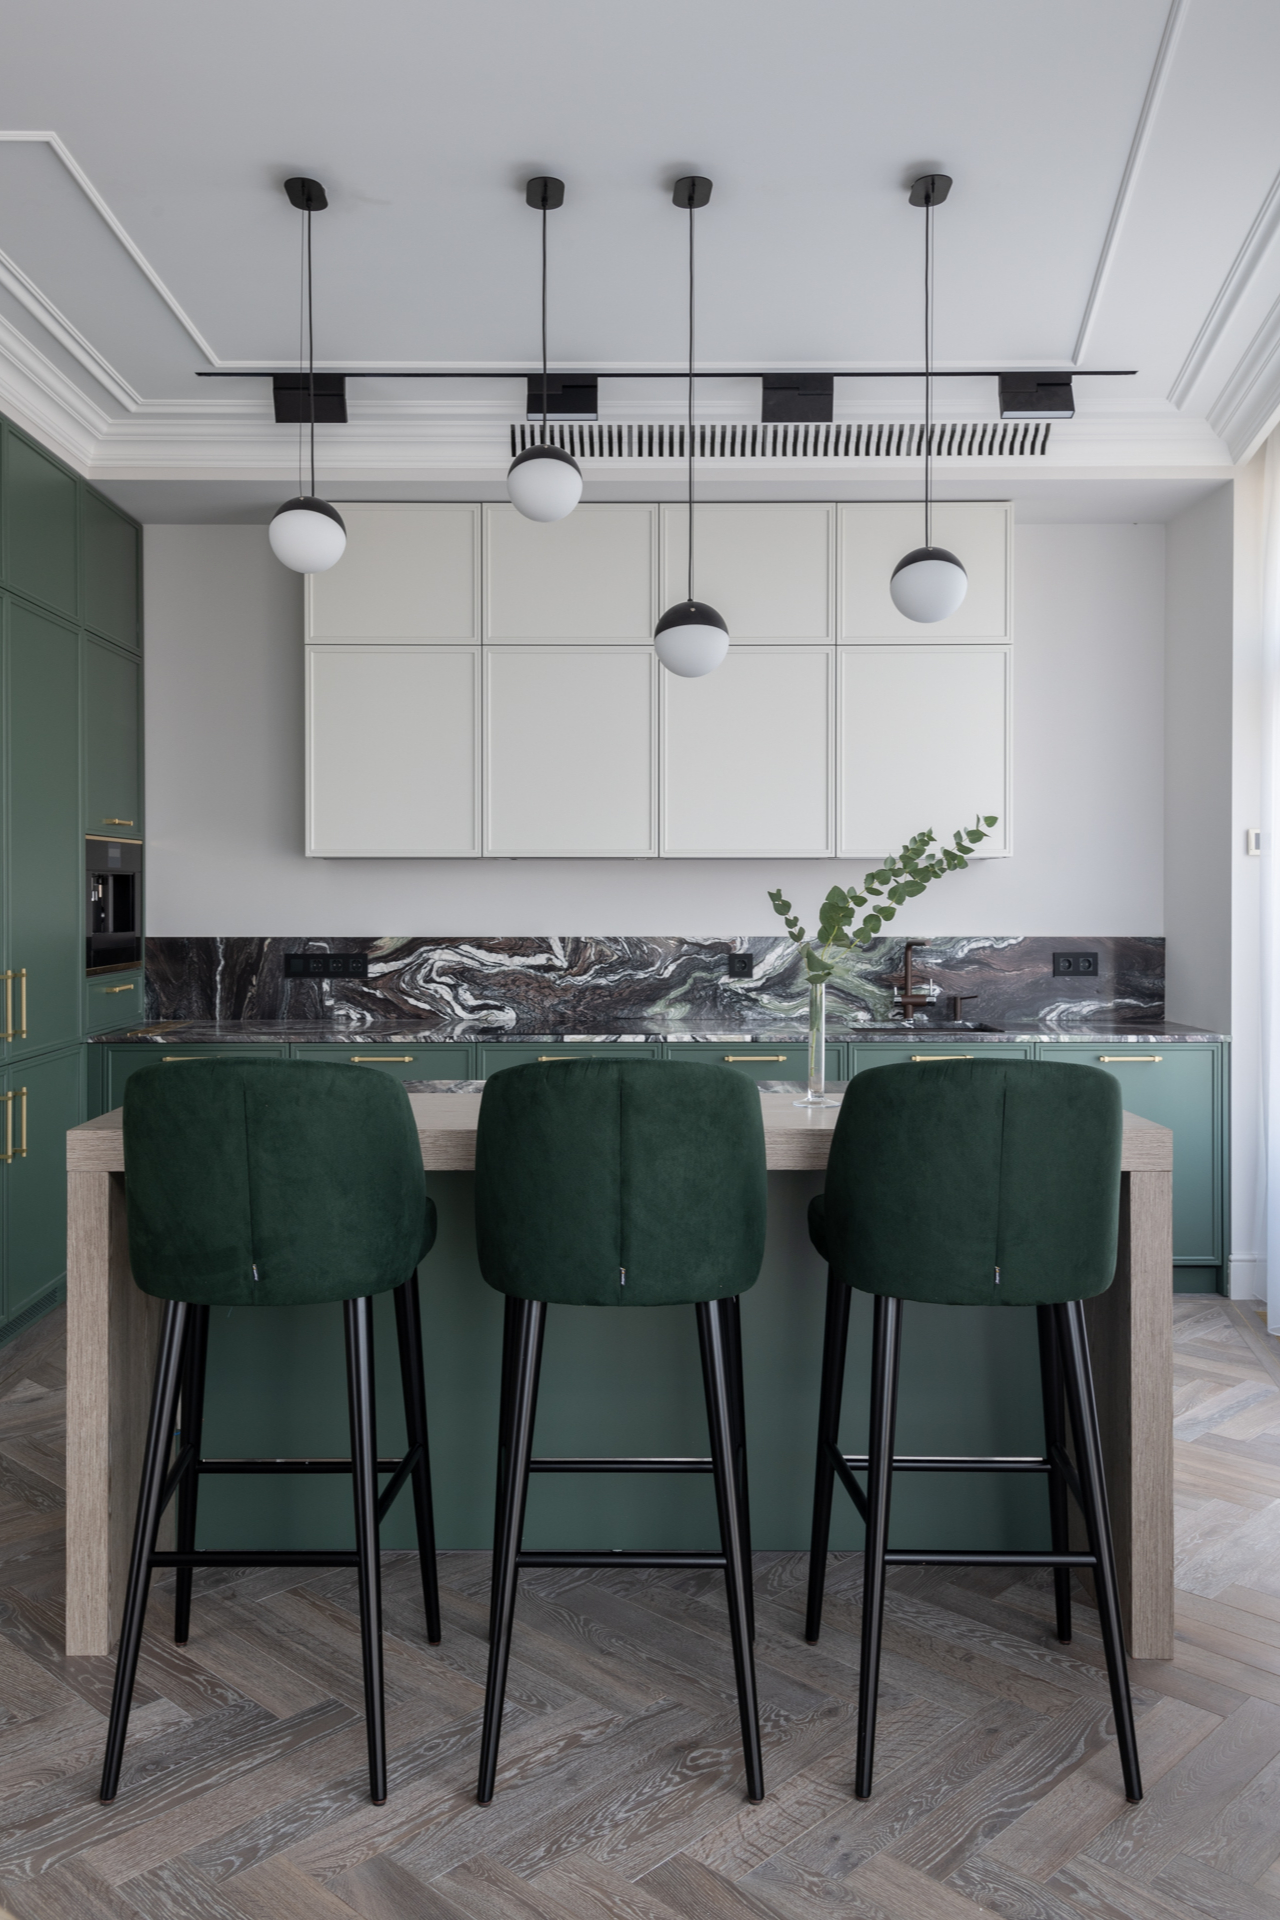 Sự kết hợp giữa gam màu xanh ngọc lục bảo của tủ bếp, bộ ghế ăn với backsplash ốp đá cẩm thạch hoa văn xám đậm tạo cho phòng bếp vẻ đẹp thời trang, sang trọng.